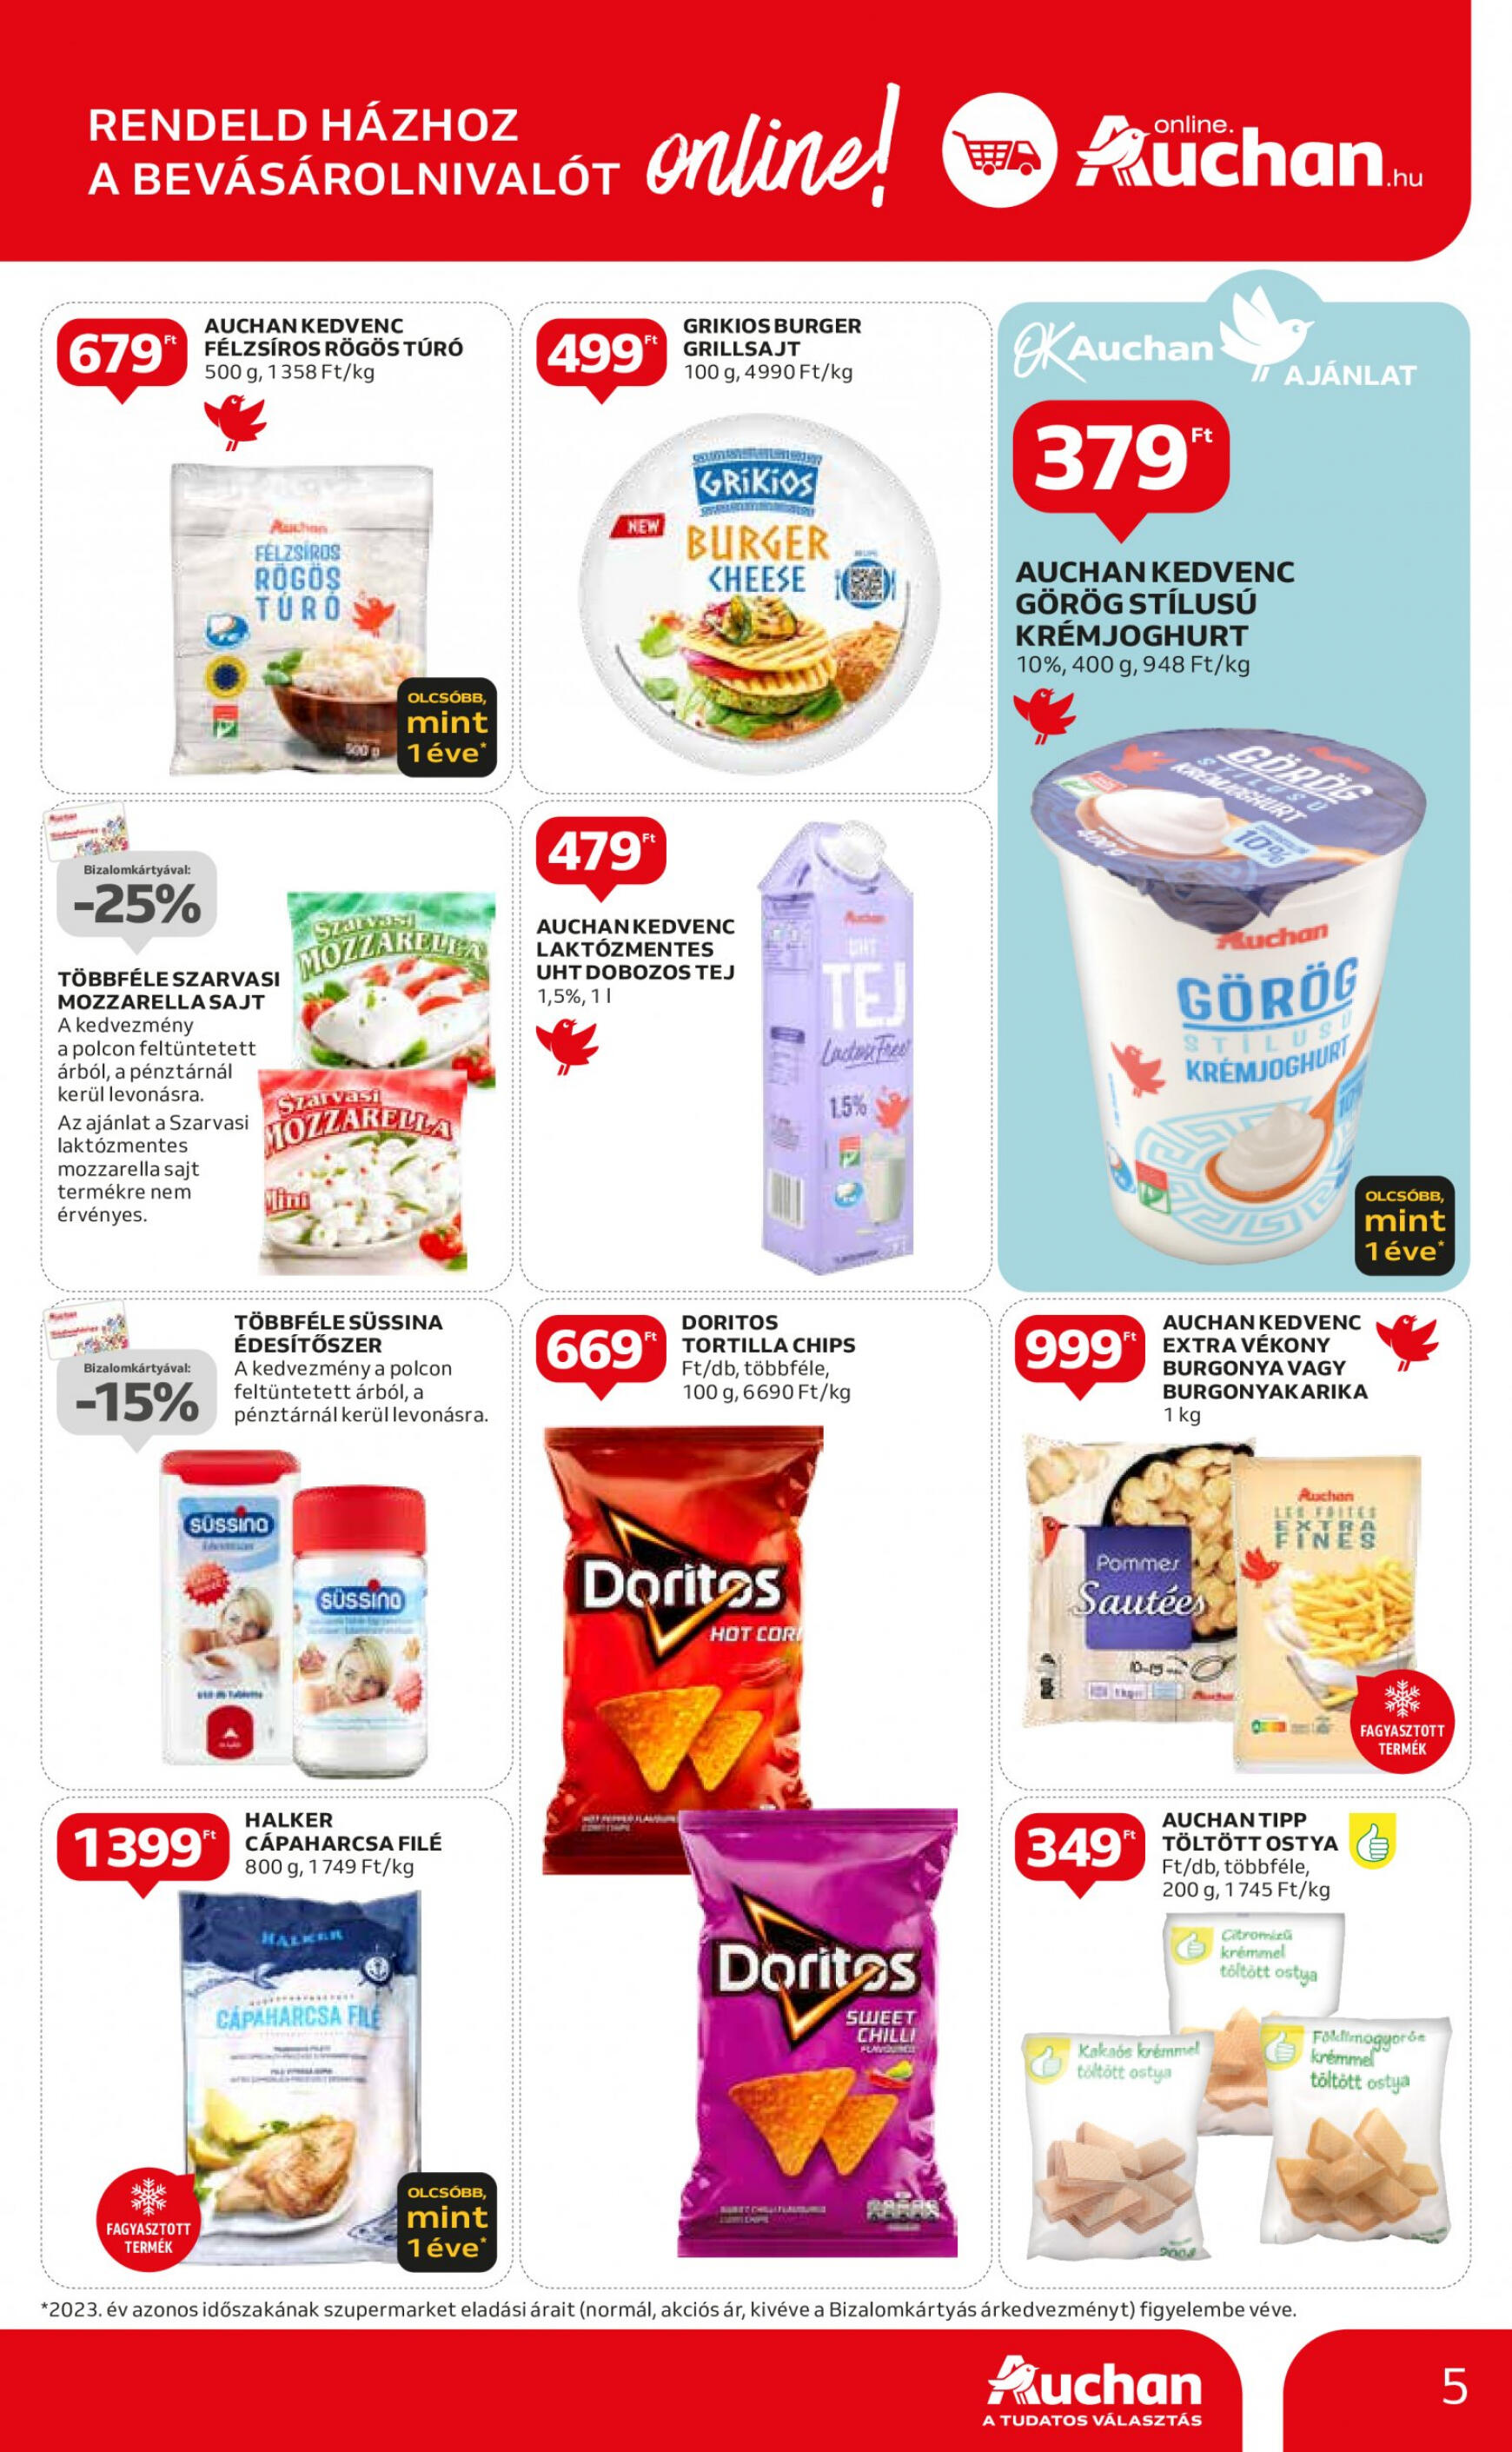 auchan - Aktuális újság Auchan szupermarket 04.25. - 05.30. - page: 5